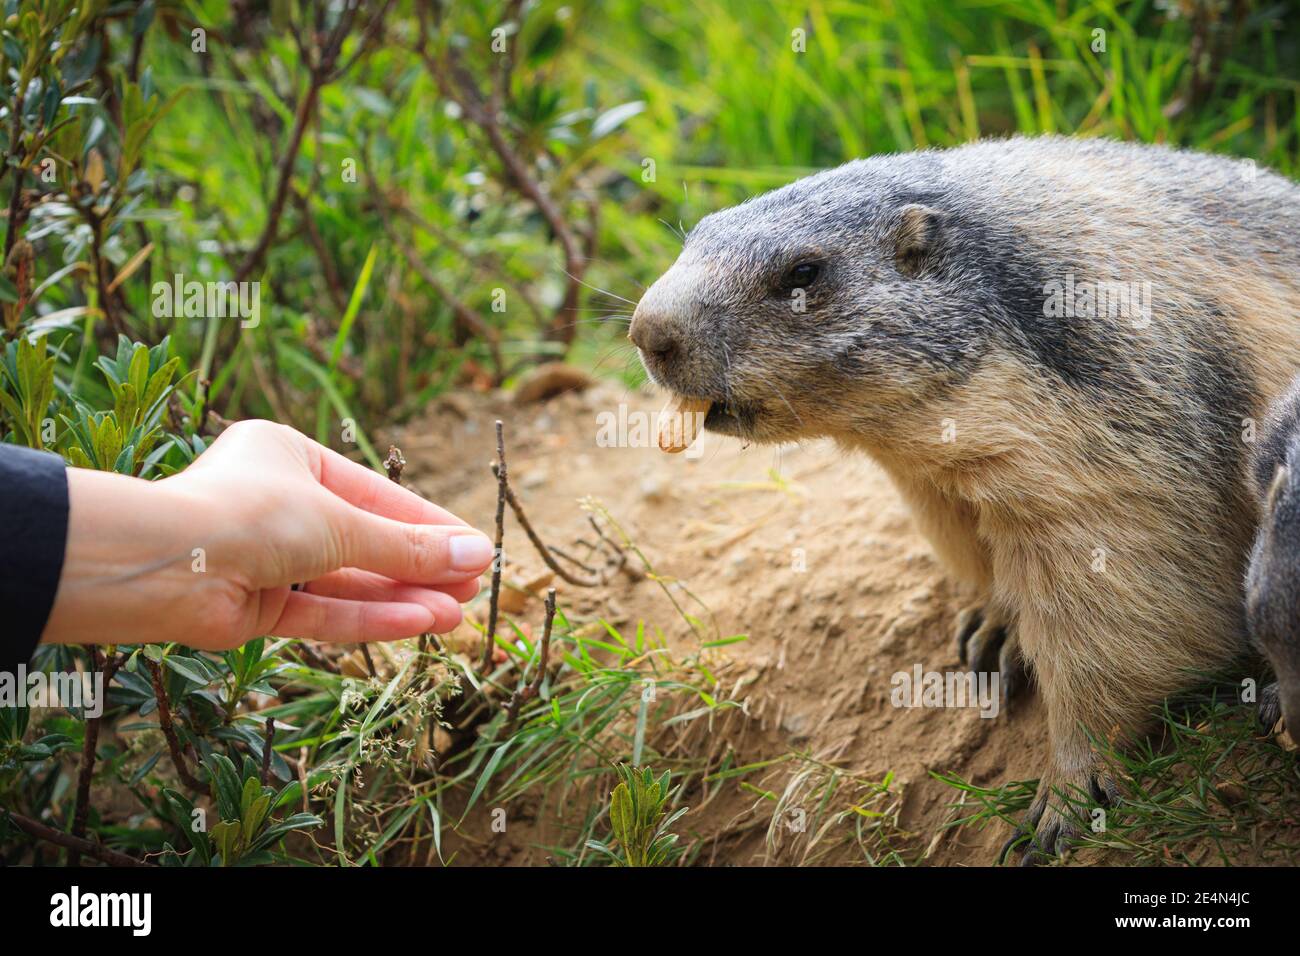 Wild Marmot Marmota groundhog si sta nutrendo nelle alpi svizzere Svizzera animali fauna selvatica terra scoiattolo con mano umana mano, arachide macro dettaglio Foto Stock